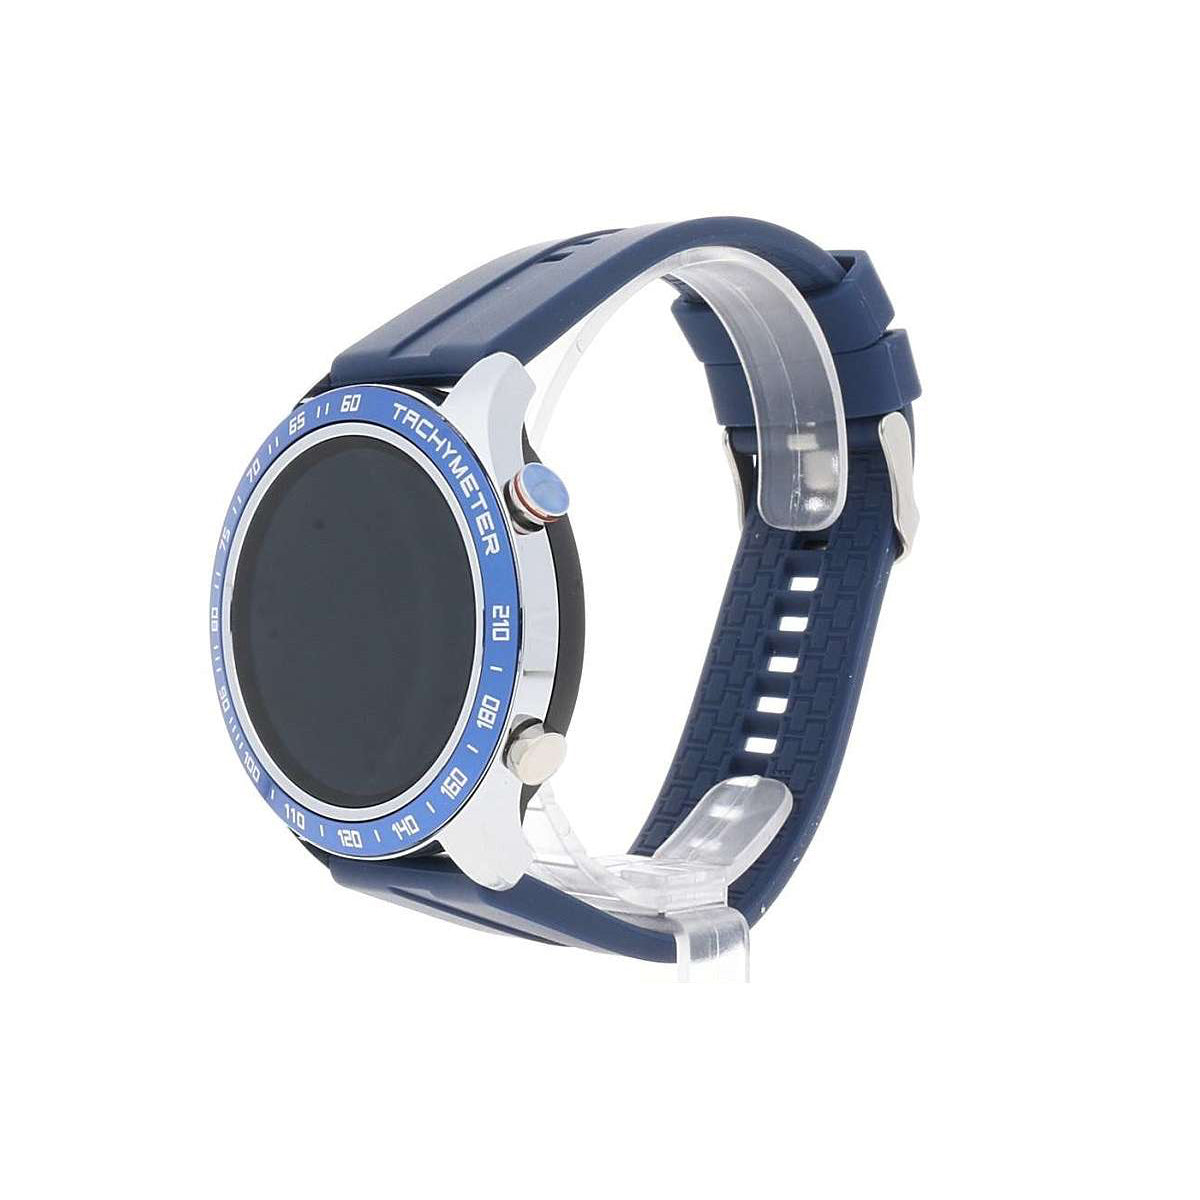 DAVID LIAN Smartwatch Uomo Londra con Cinturino in Silicone Blu e